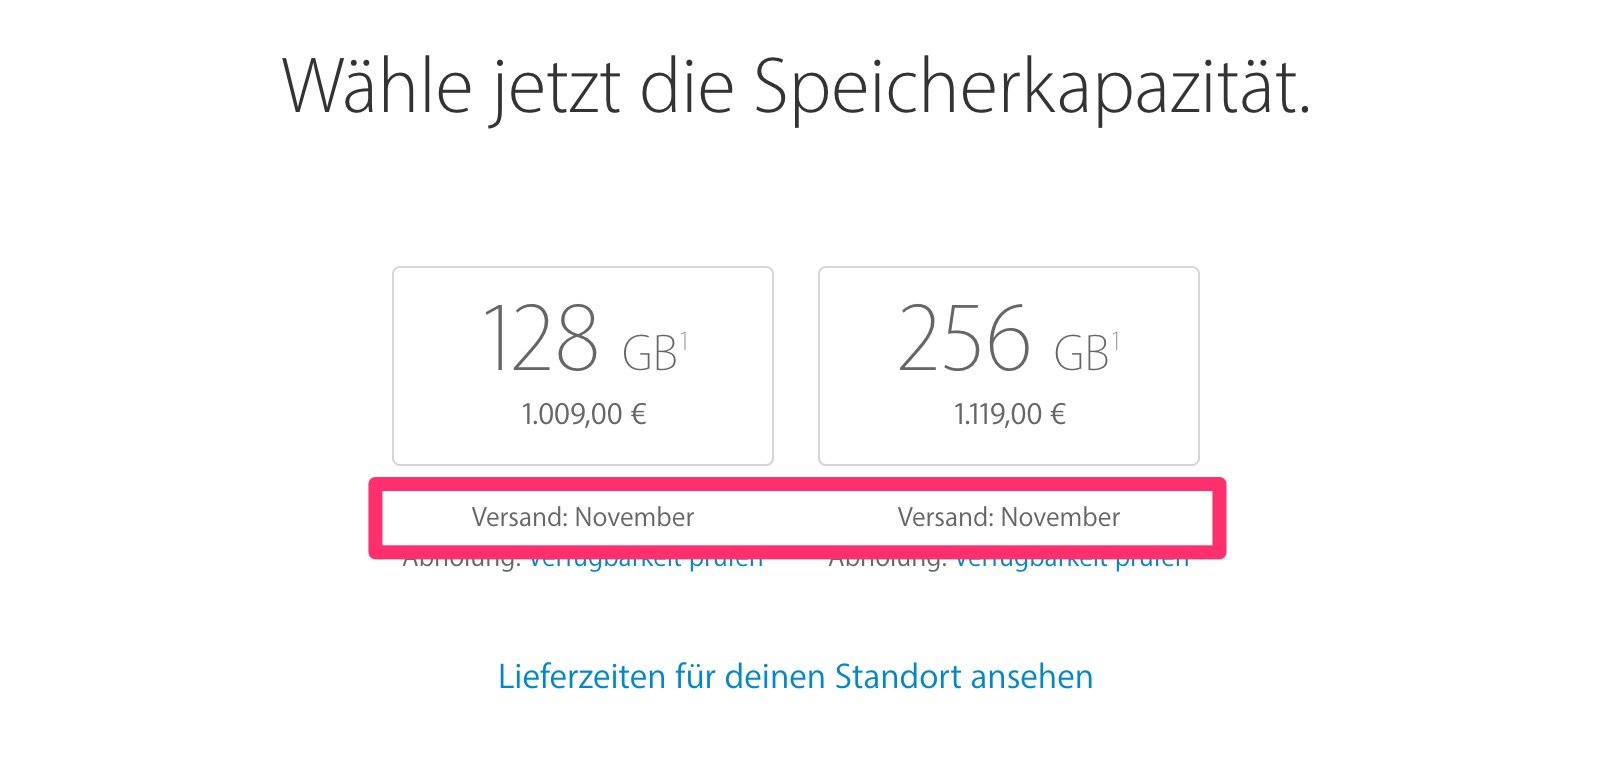 iPhone 7 (Plus) schon ausverkauft: Lieferzeit / Lieferung im November! 2